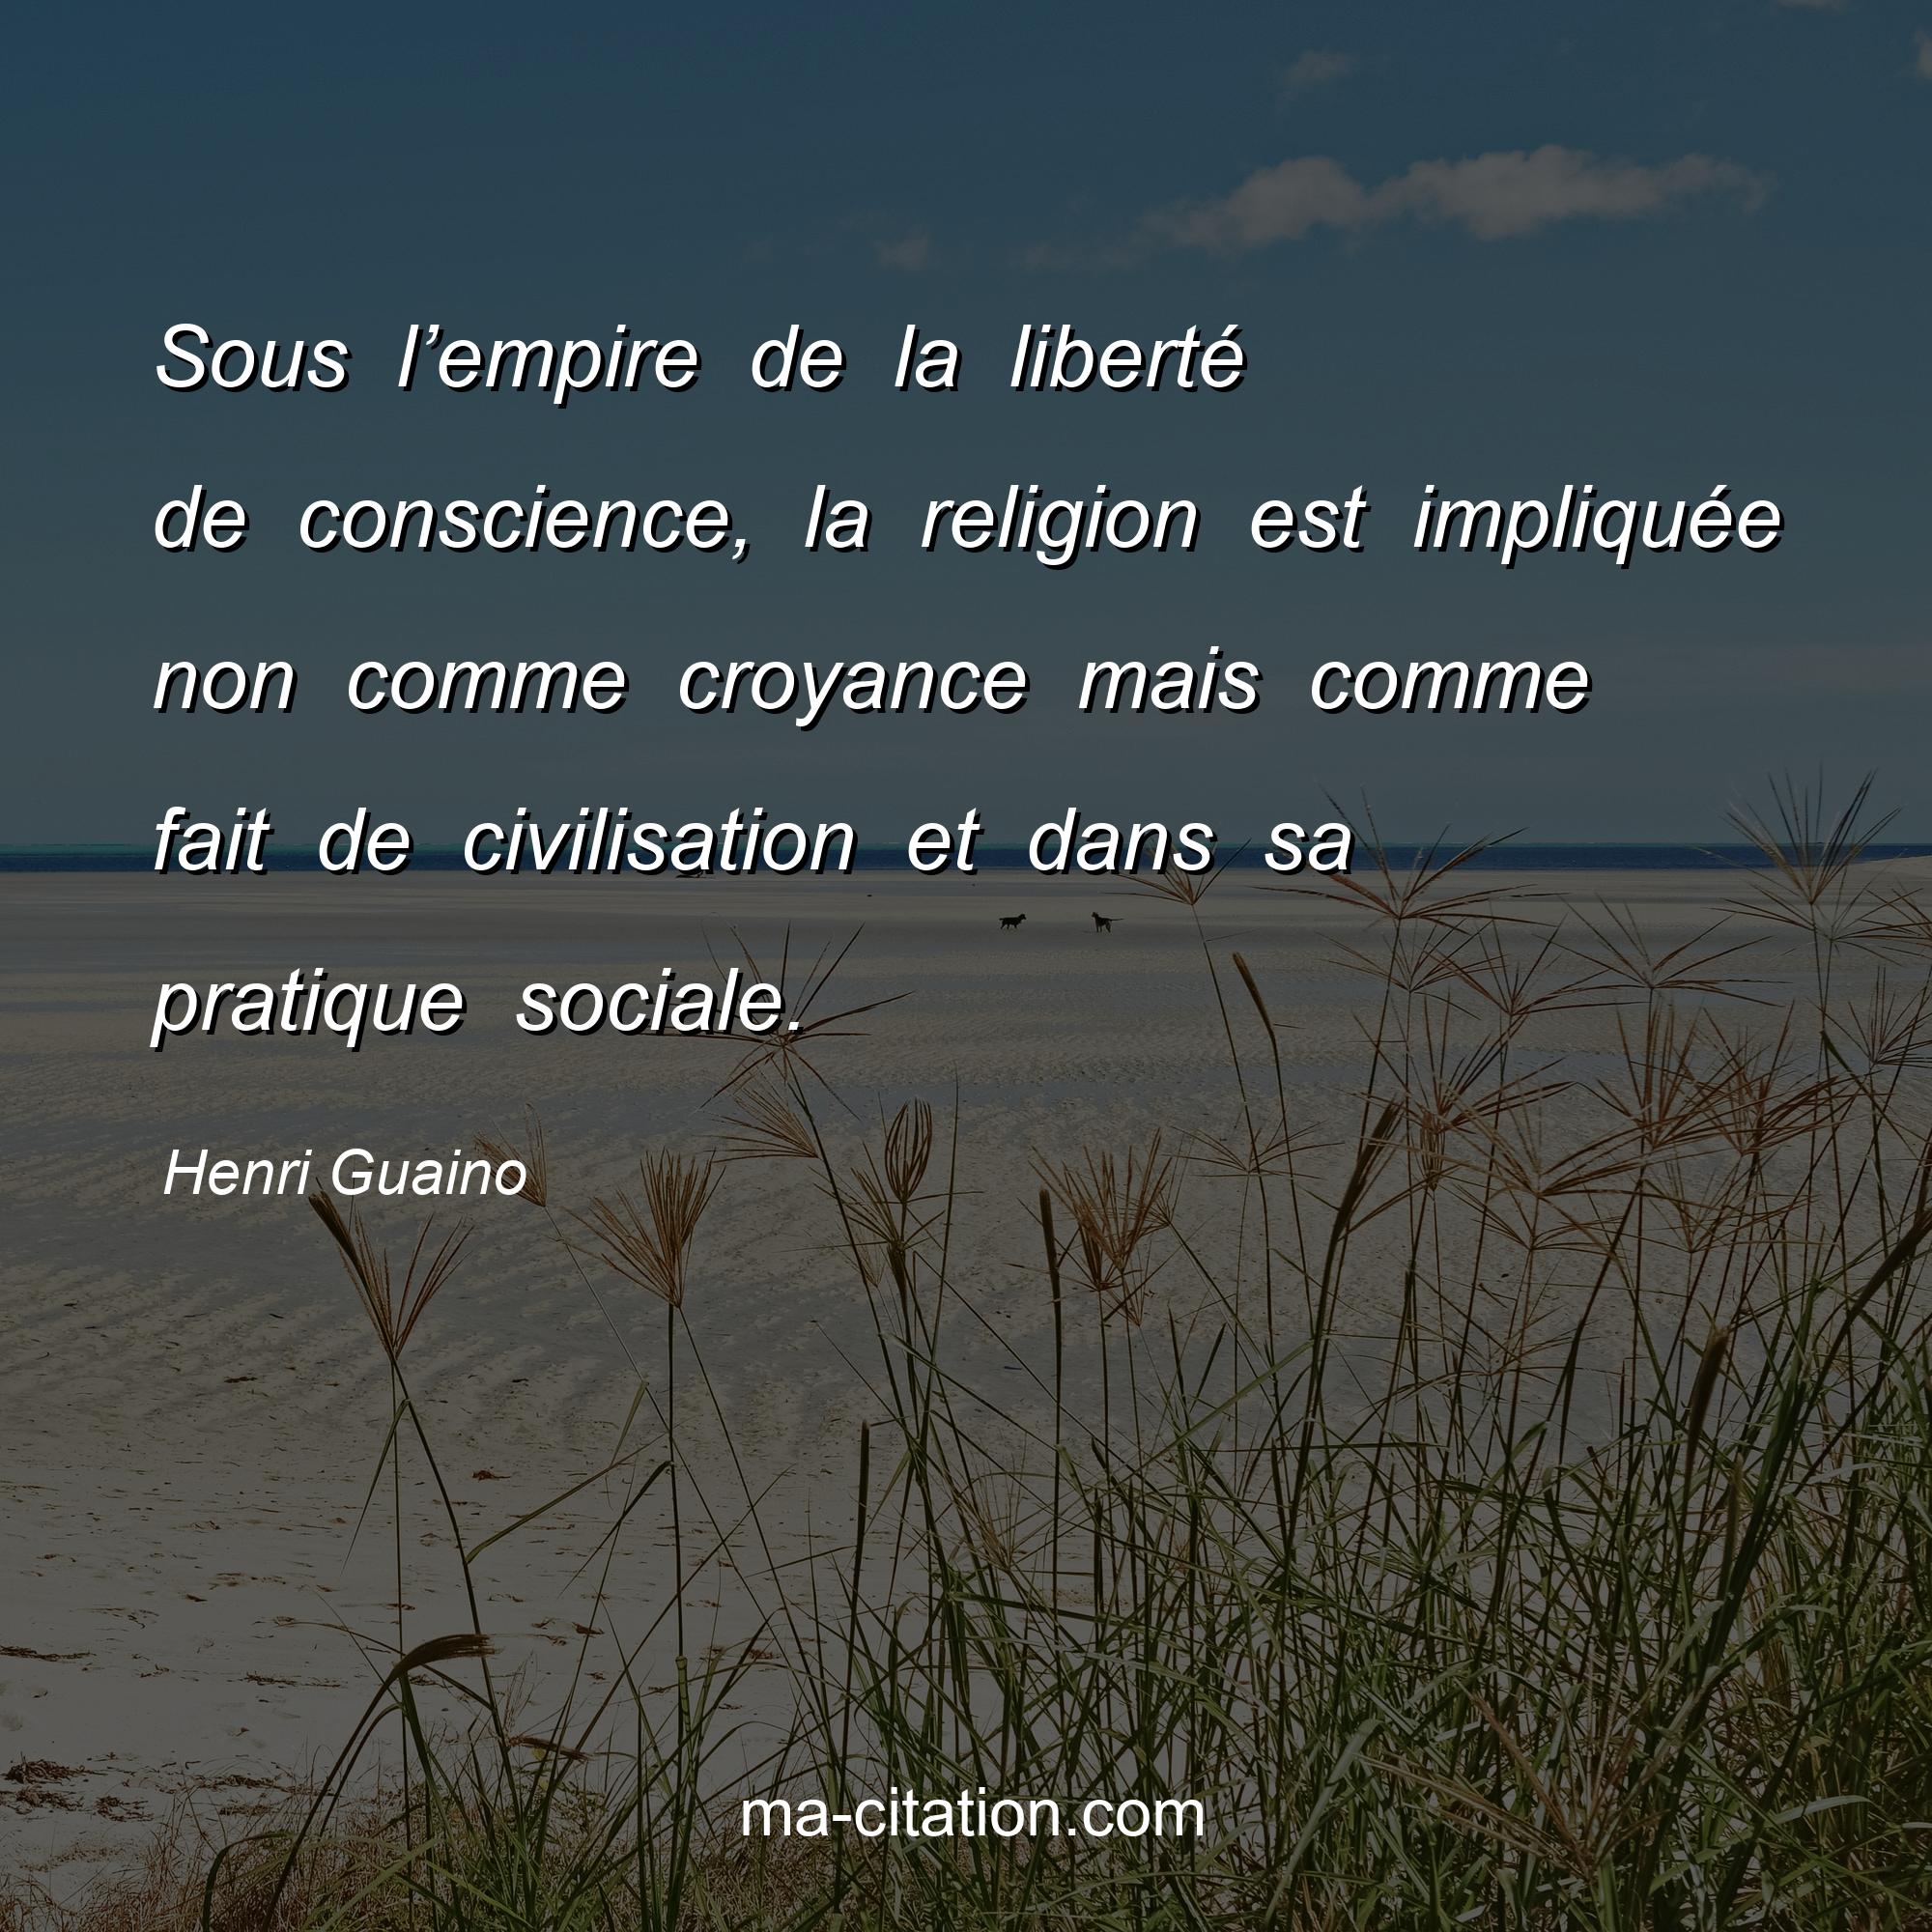 Henri Guaino : Sous l’empire de la liberté de conscience, la religion est impliquée non comme croyance mais comme fait de civilisation et dans sa pratique sociale.